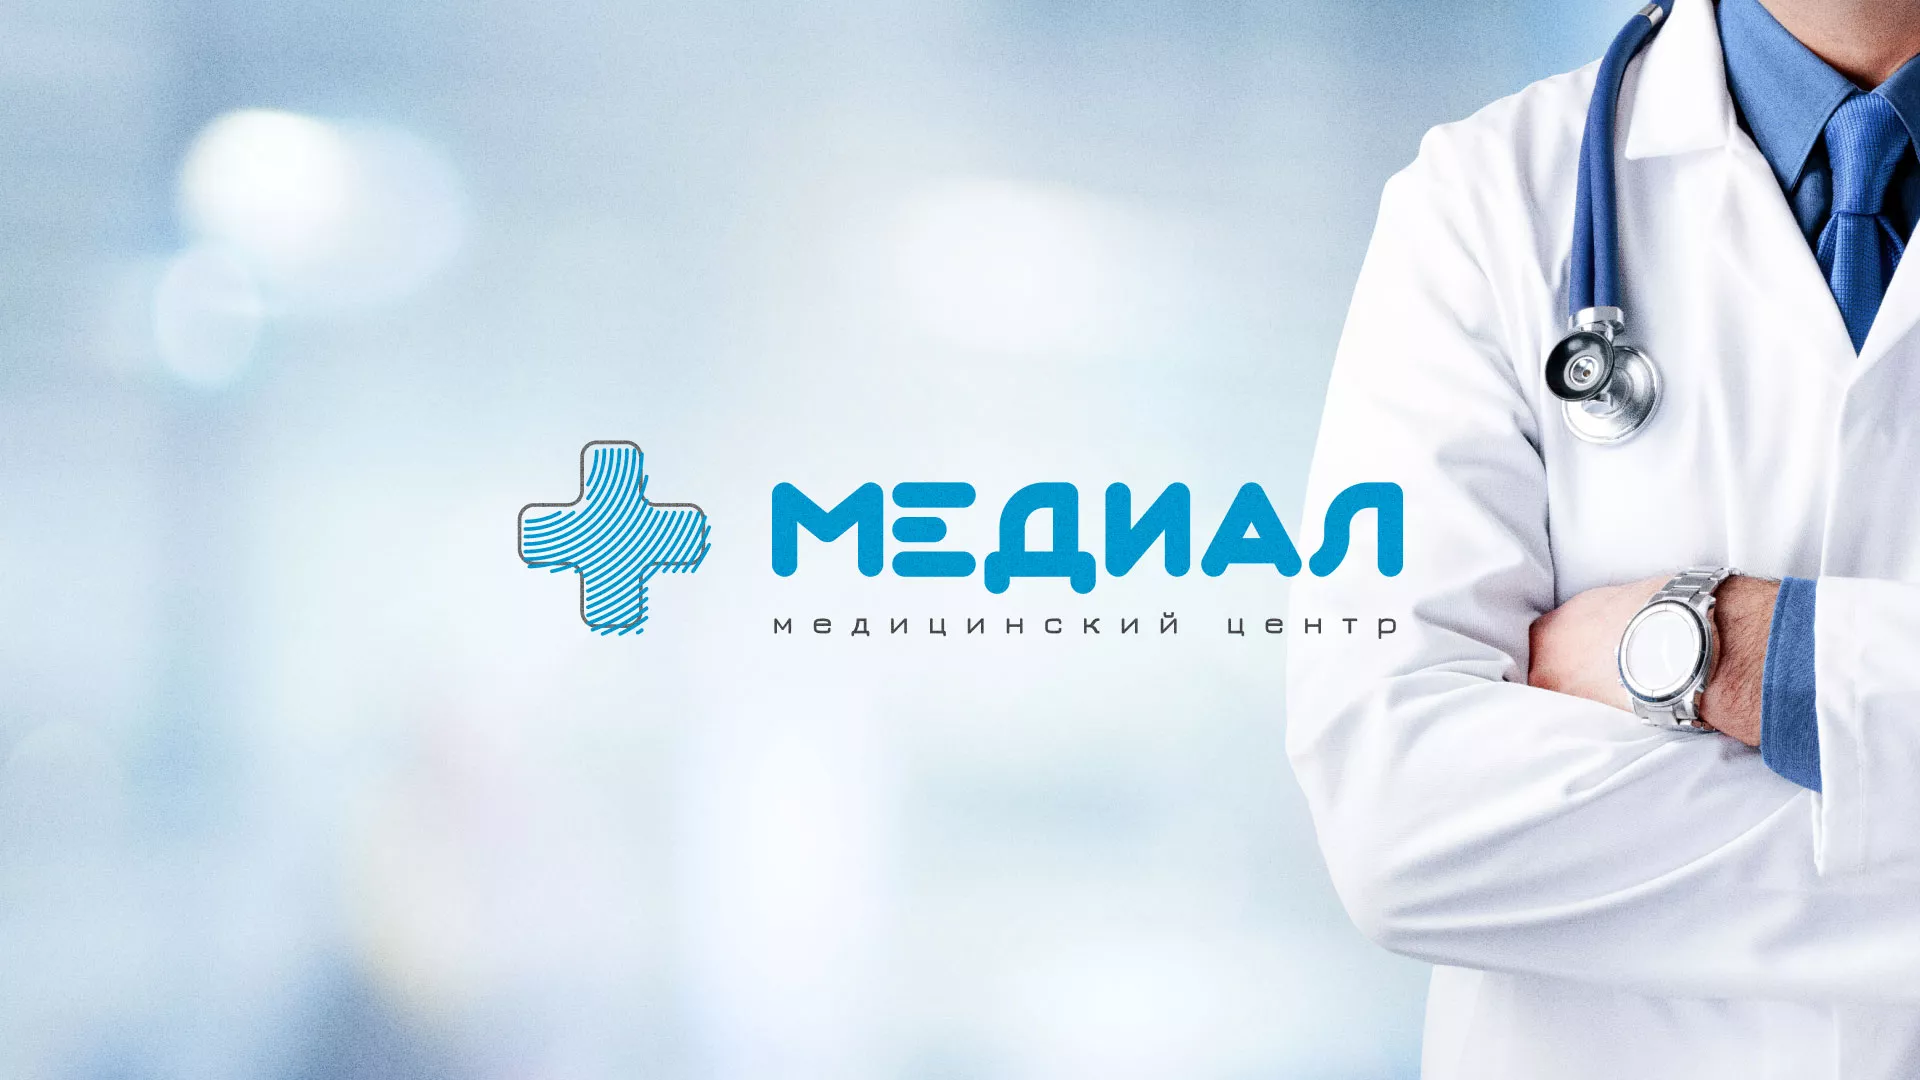 Создание сайта для медицинского центра «Медиал» в Усть-Куте